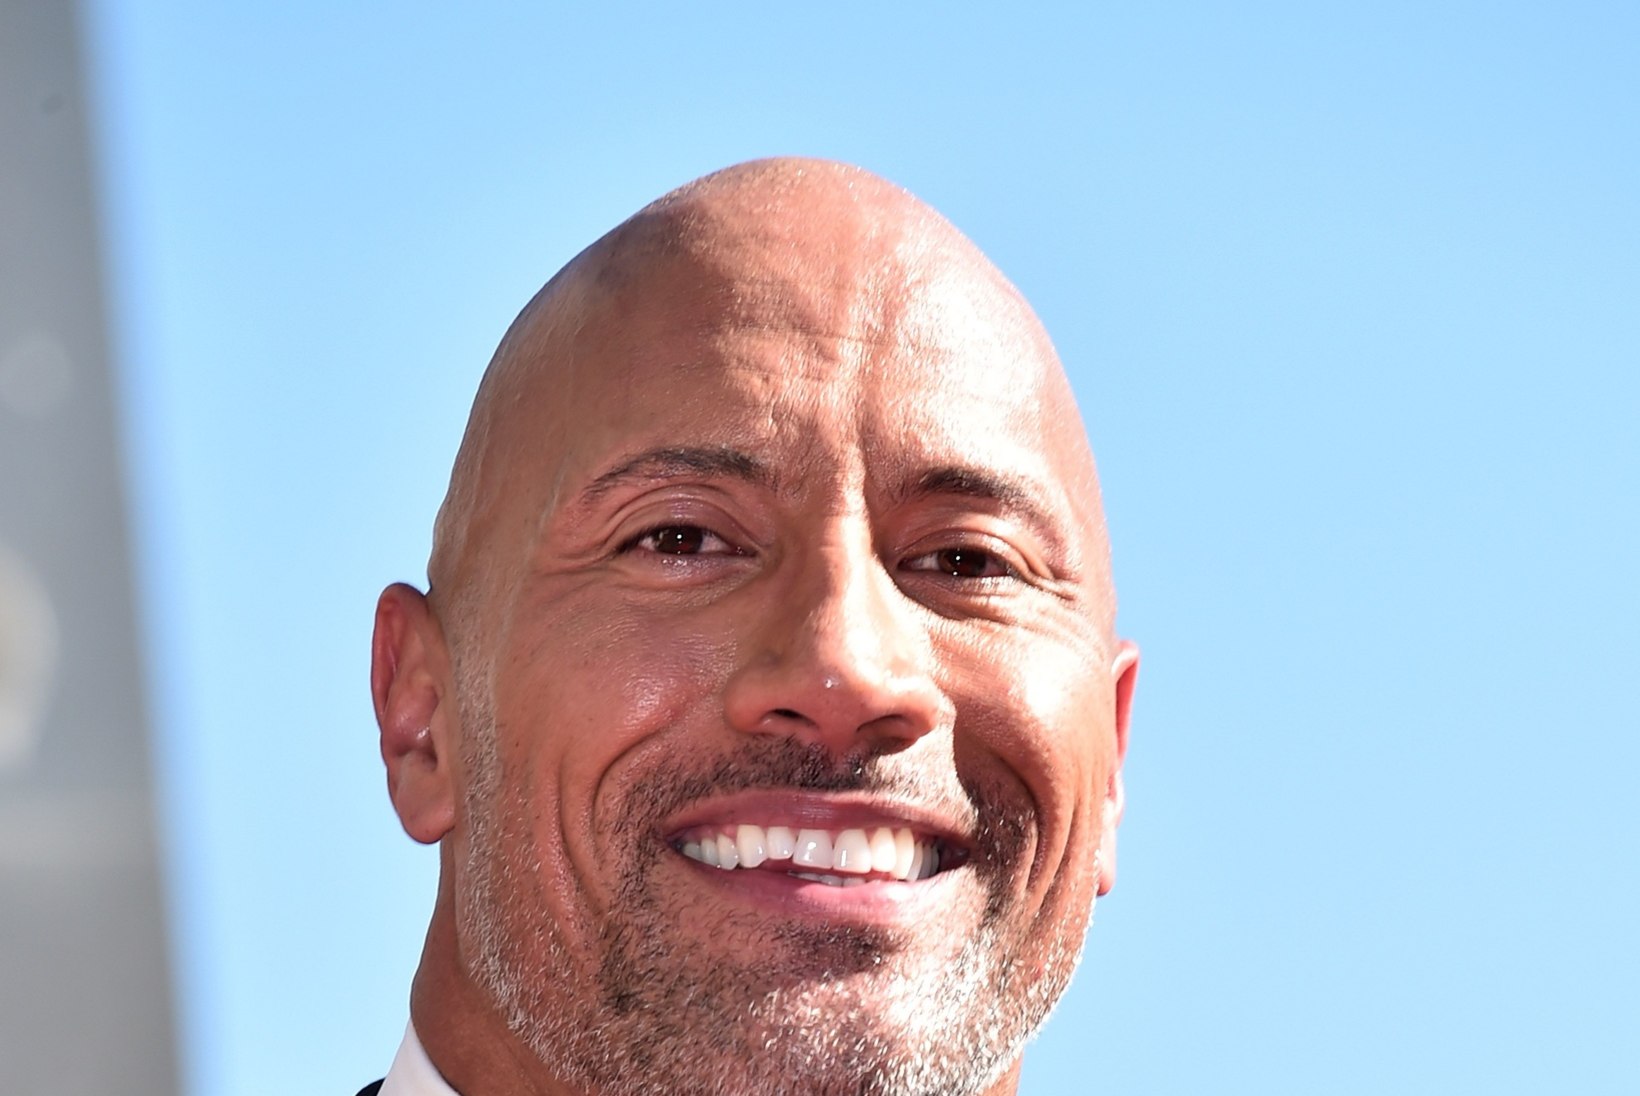 Aasta tulusaimad näitlejad on Vin Diesel ja Dwayne "The Rock" Johnson